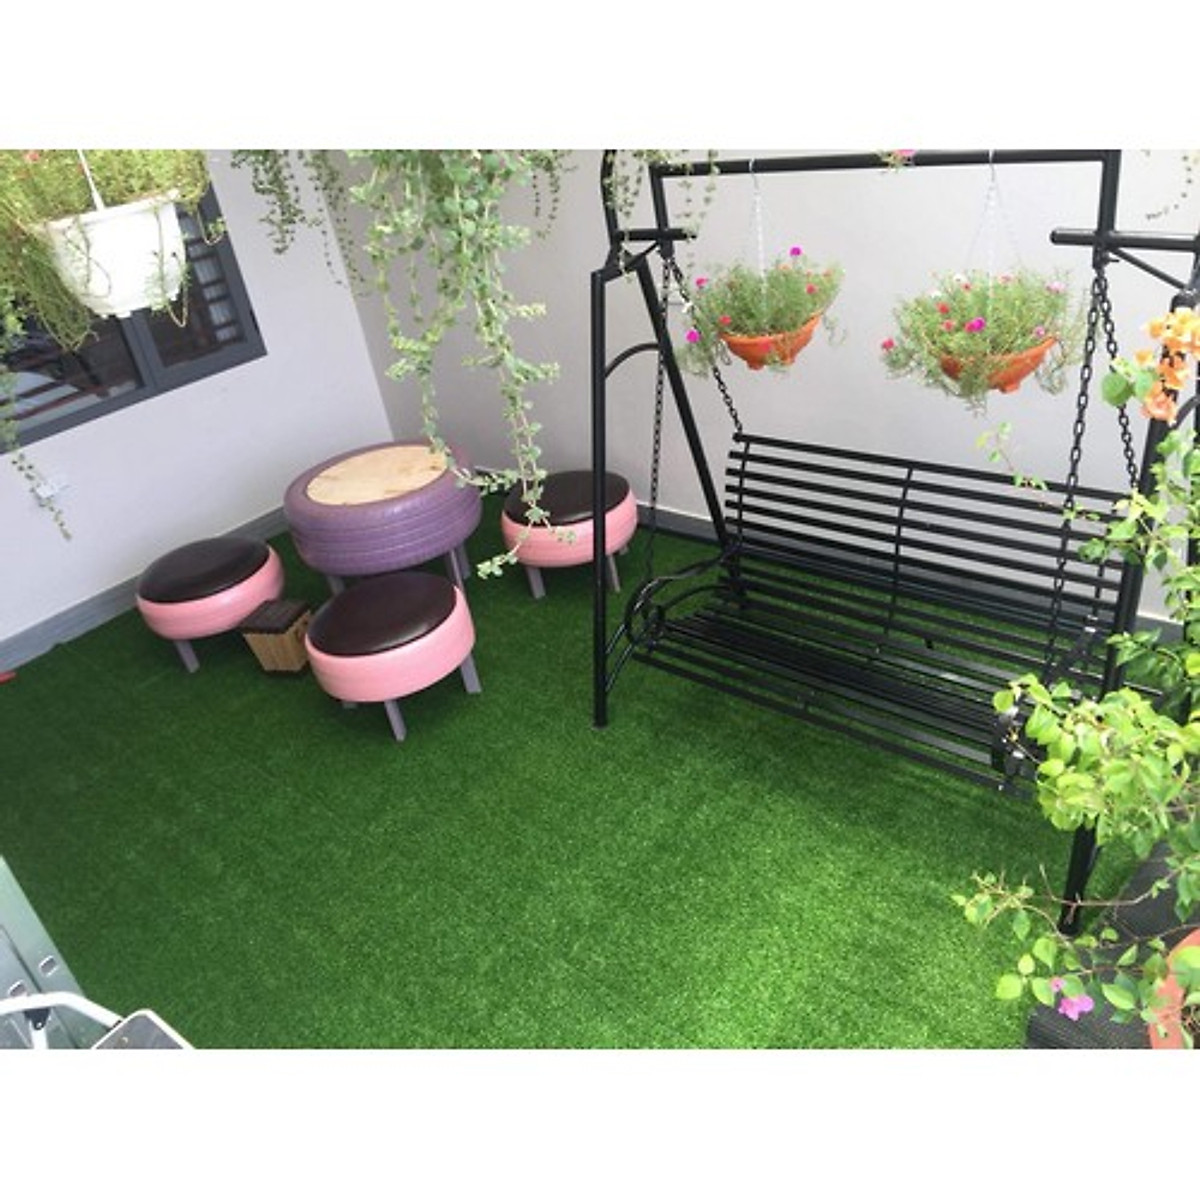 Thảm cỏ nhân tạo 3.5cm 1m2 Eotygroup - Thảm cỏ nhân tạo trang trí sân vườn, ban công, làm thảm lót sàn